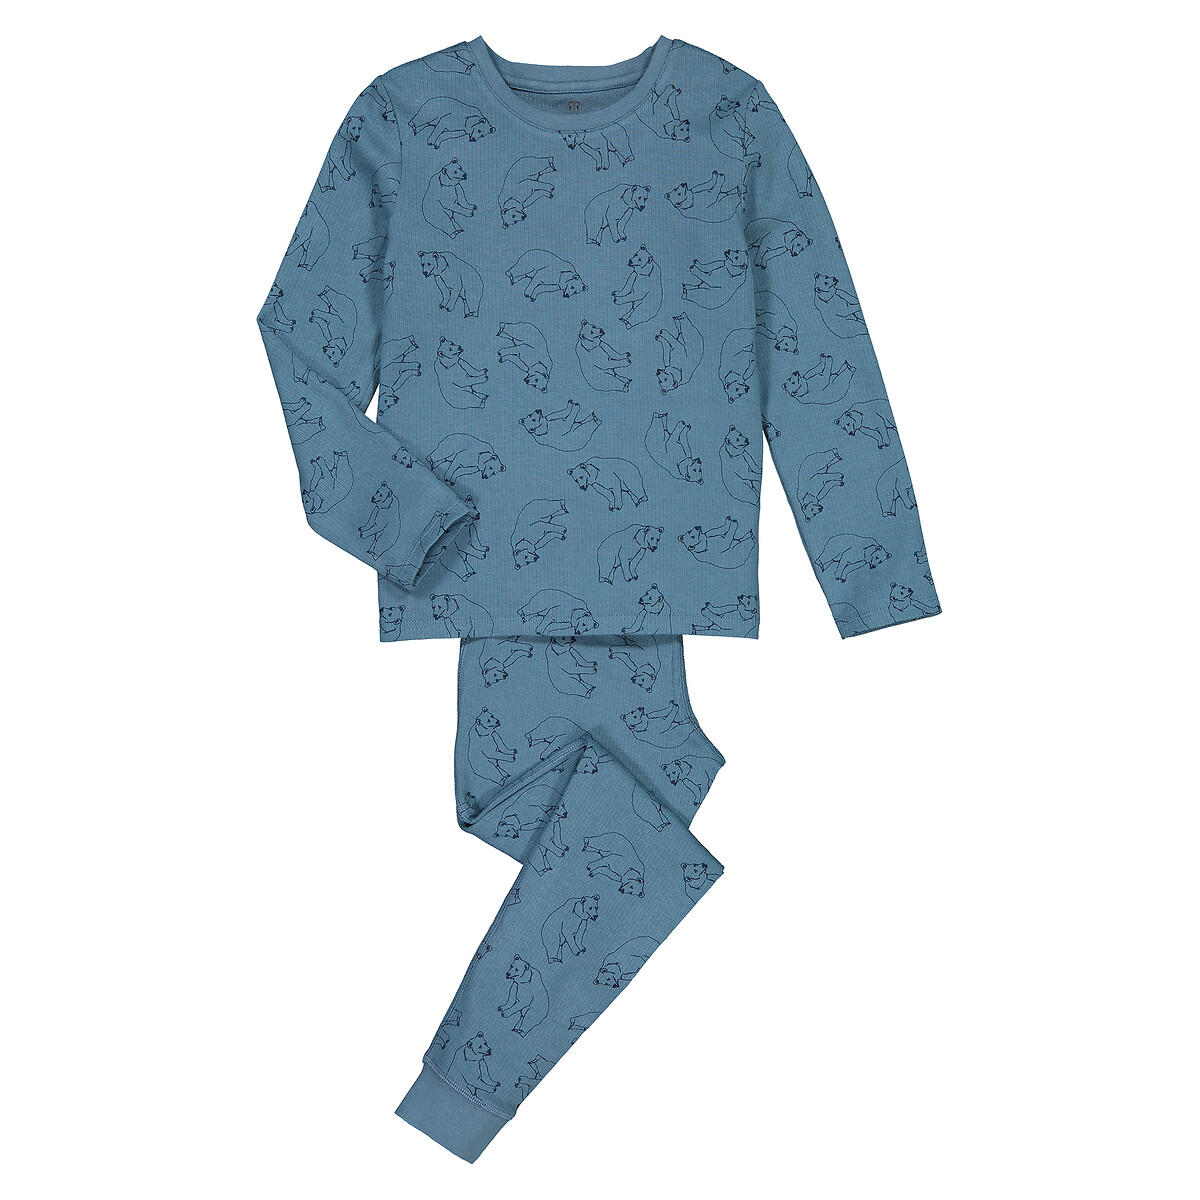 Пижама LaRedoute В рубчик с принтом 3-12 лет 12 лет -150 см синий, размер 12